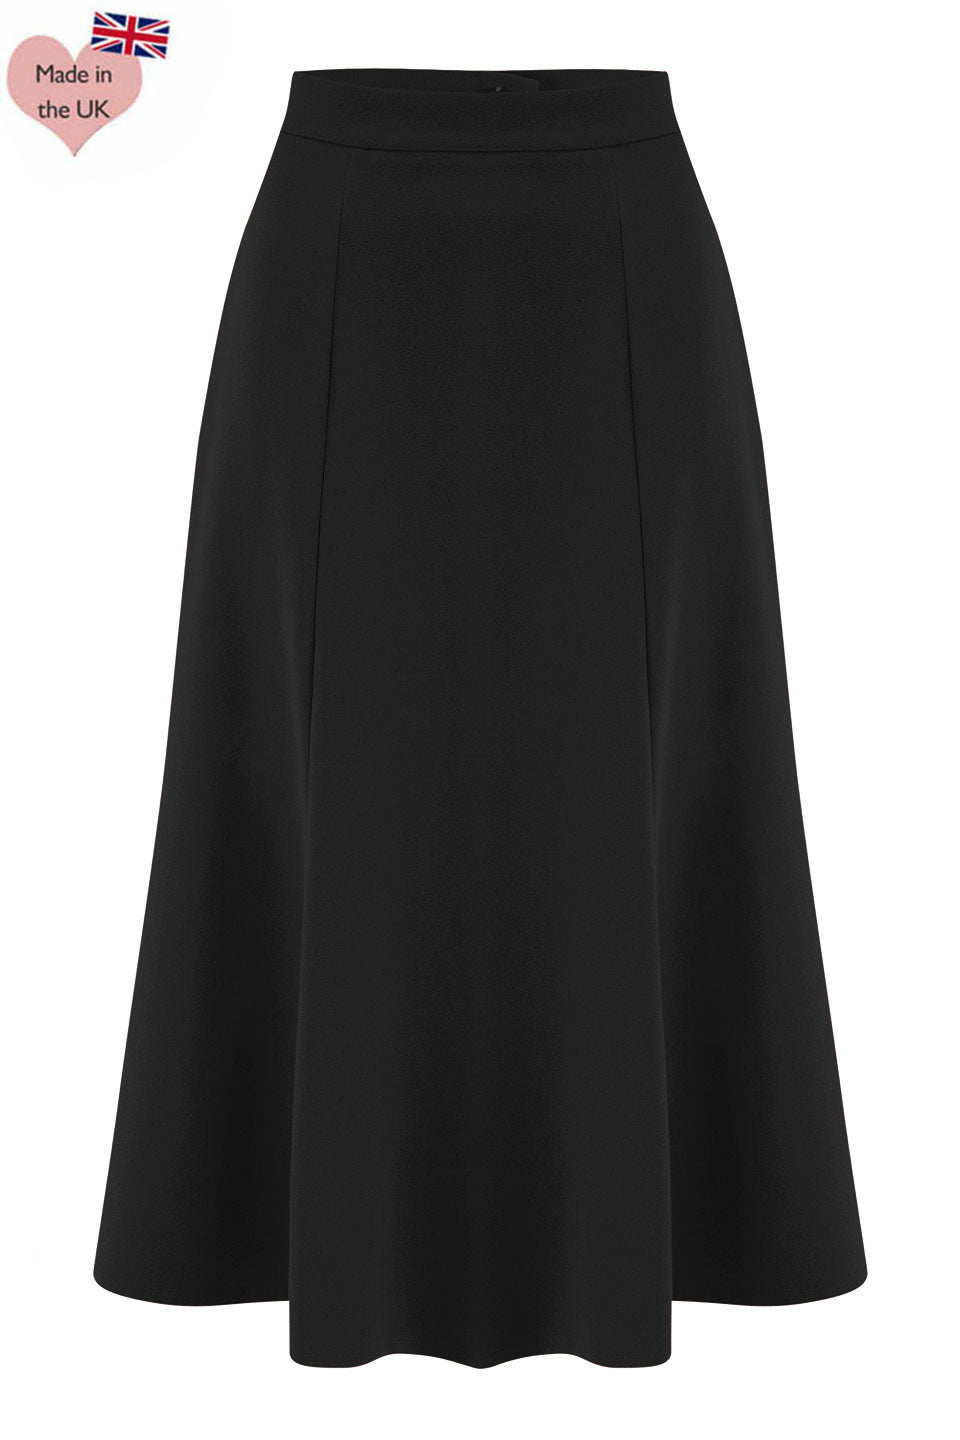 Black Vintage Inspired Below Knee Length Crepe Skirt  | 1930s and 40s Style | Weekend Doll  